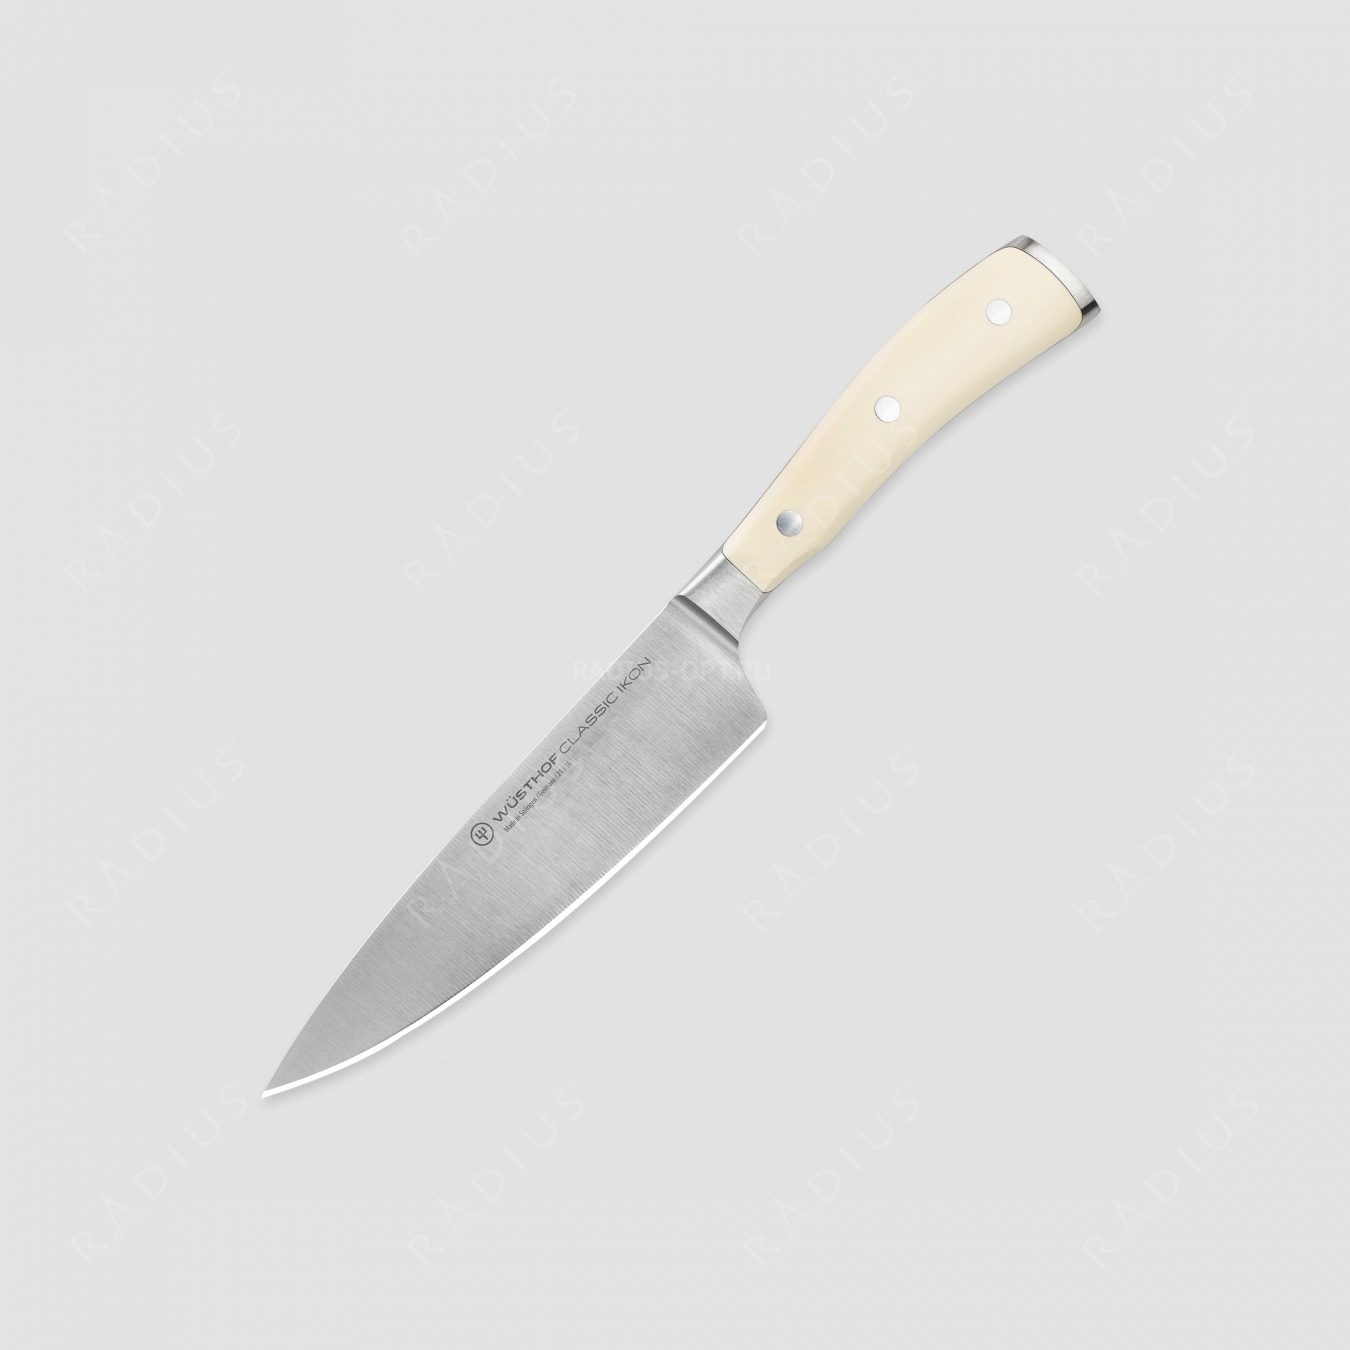 Профессиональный поварской кухонный нож 16 см, серия Ikon Cream White, WUESTHOF, Золинген, Германия